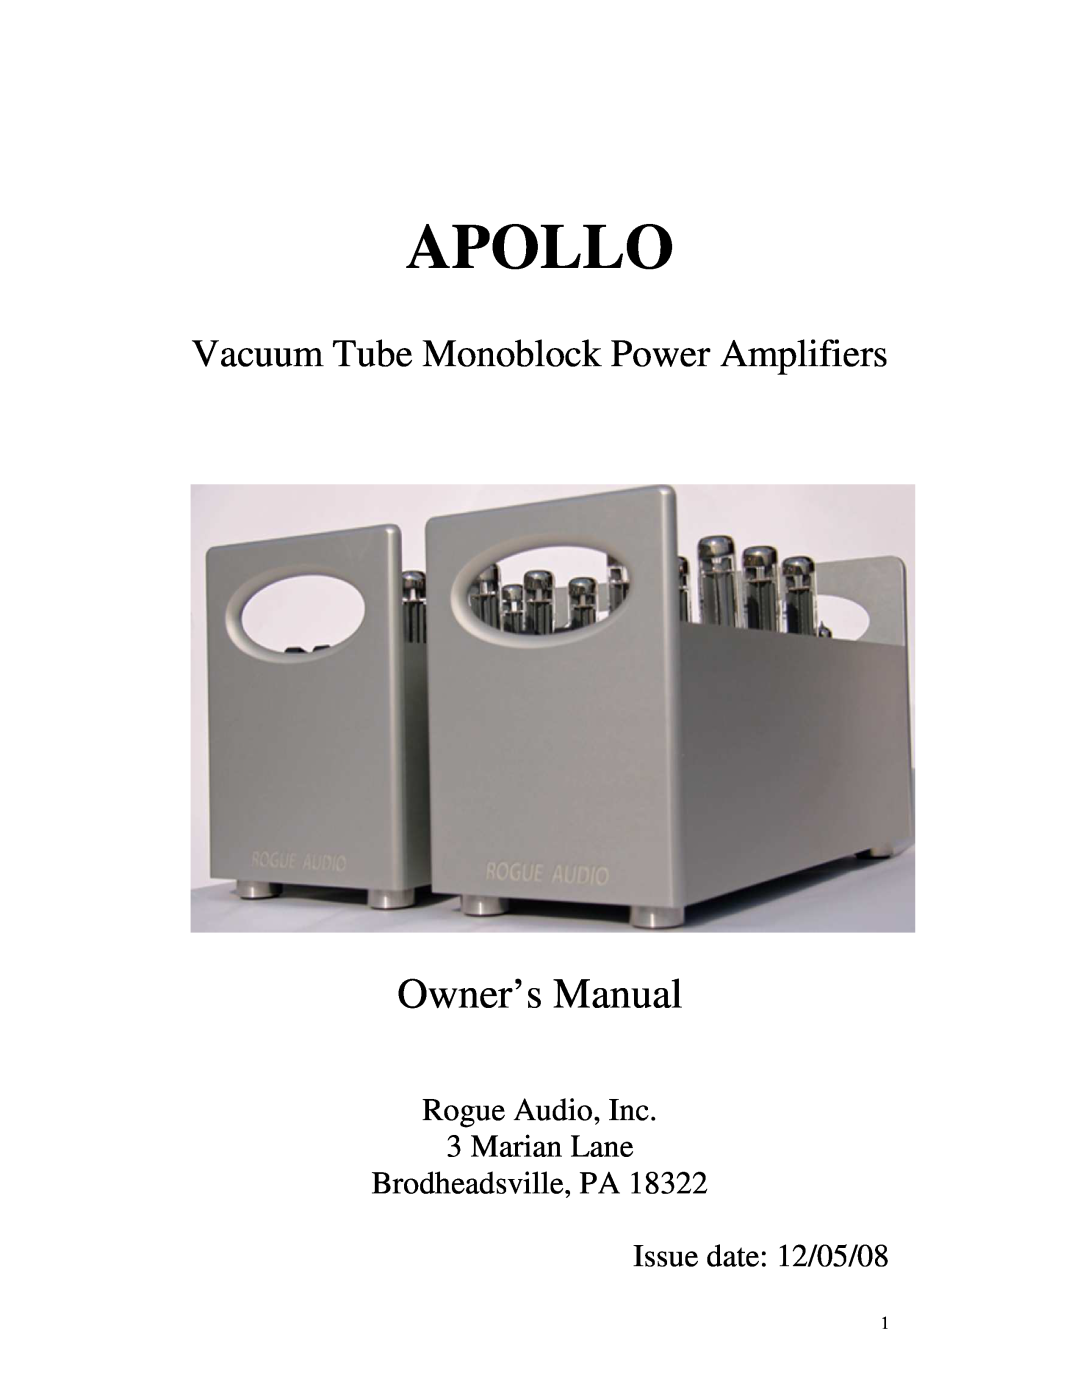 Apollo 645-062 owner manual Apollo, Vacuum Tube Monoblock Power Amplifiers, Issue date 12/05/08 